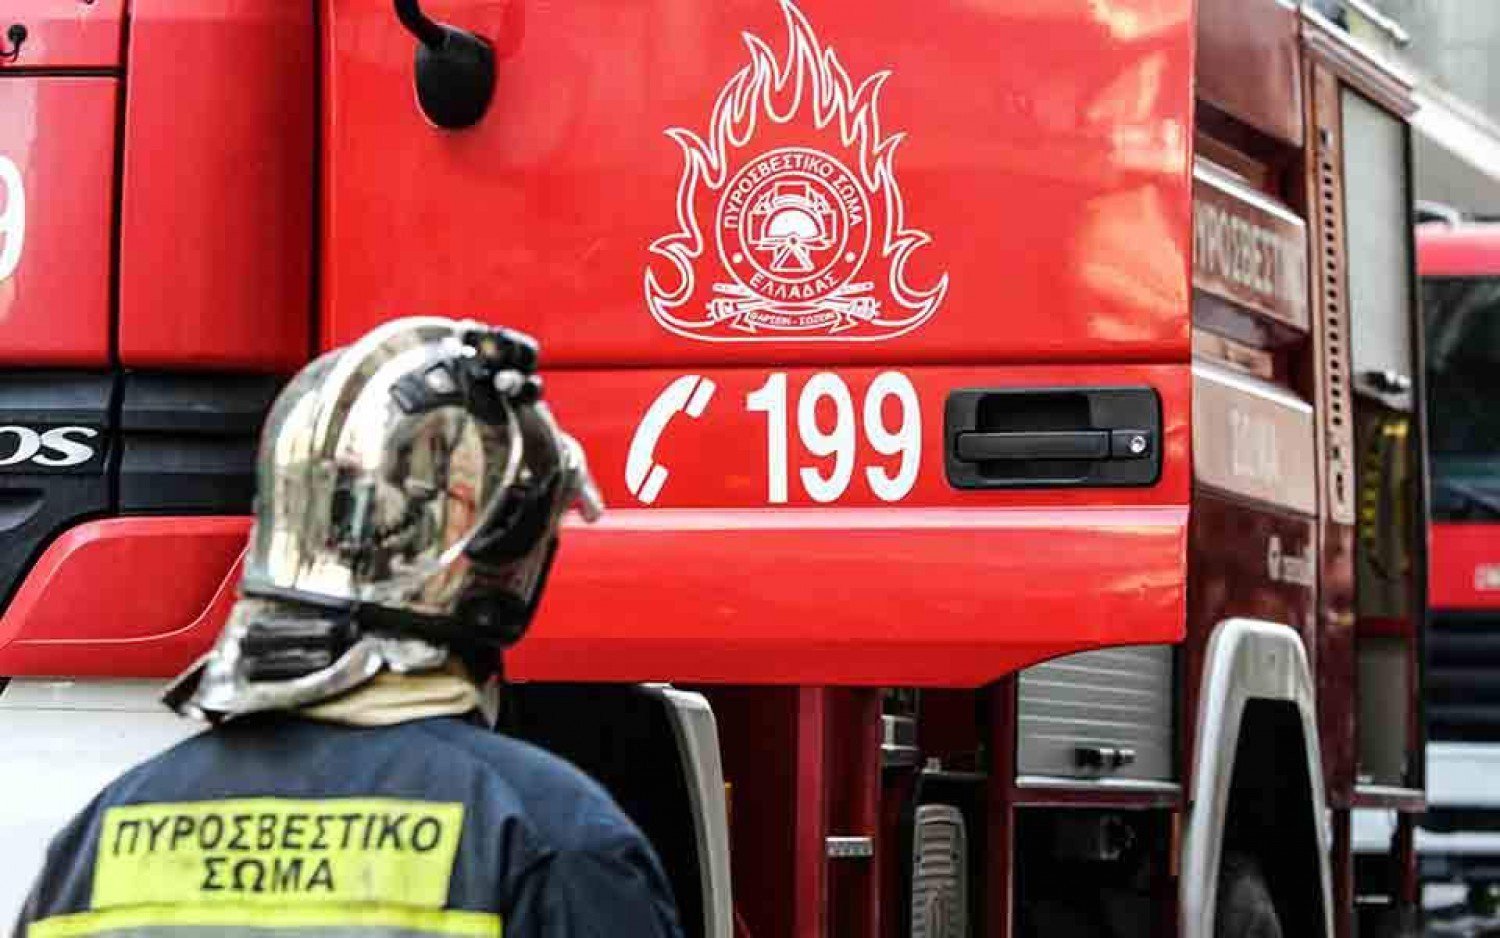 Θεσσαλονίκη: Μεγάλη φωτιά στον Εύοσμο – 150 μέτρα από πολυκατοικίες – Επί τόπου δυνάμεις της Πυροσβεστικής (βίντεο)